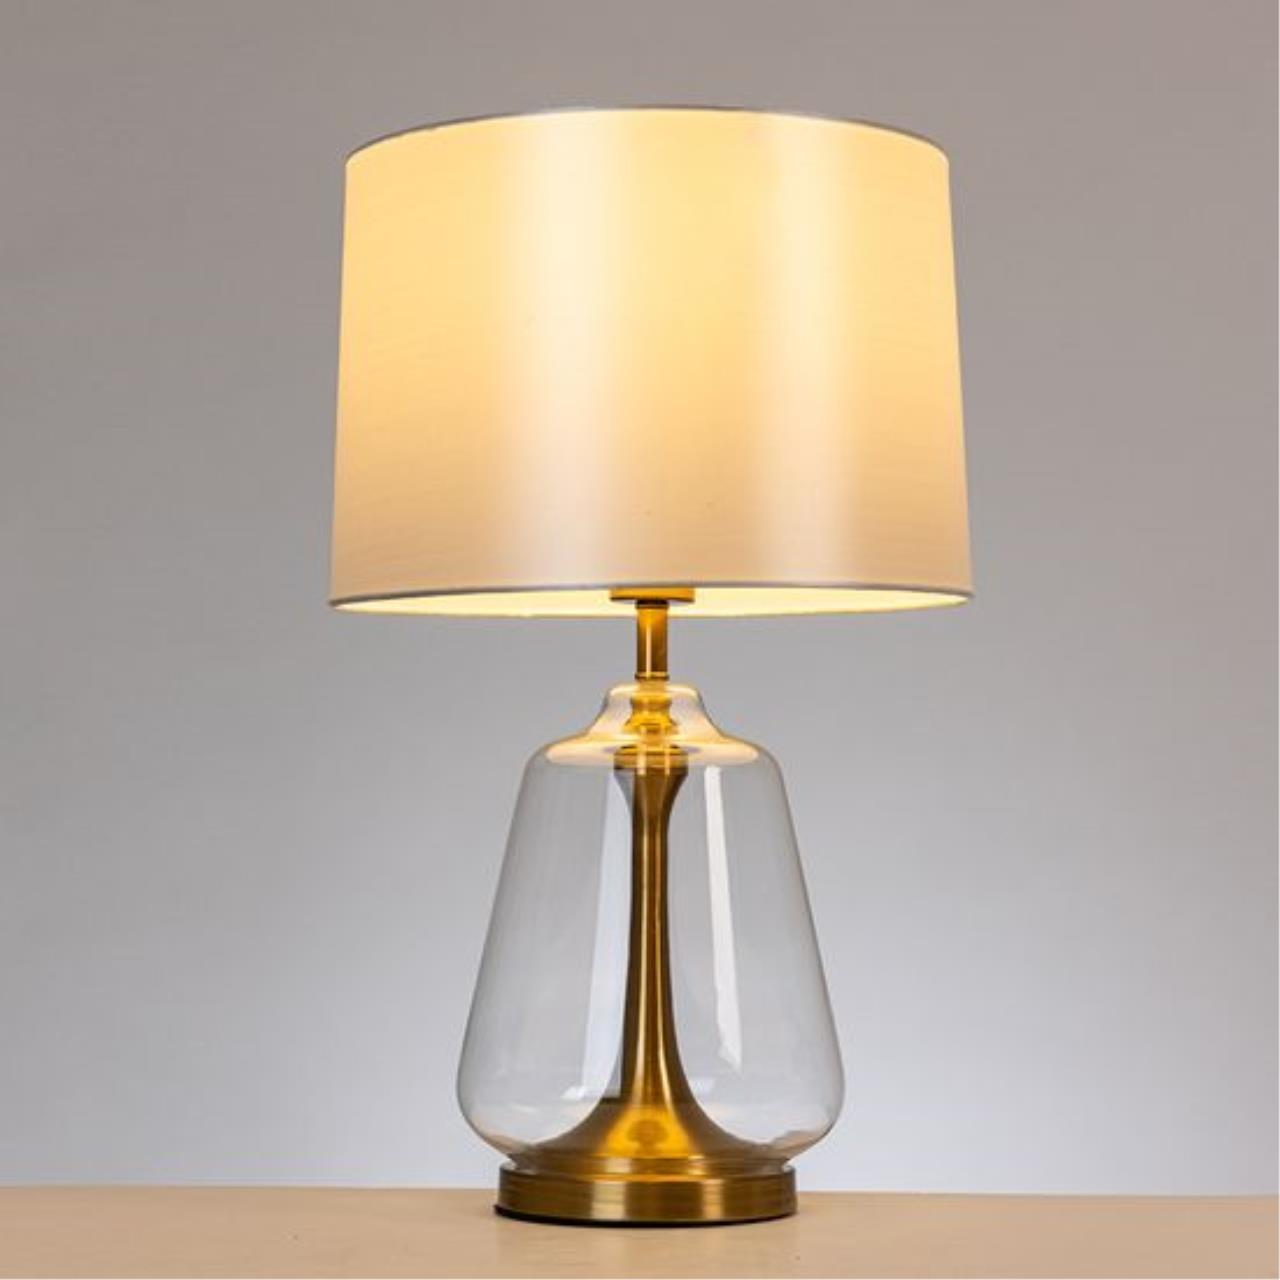 Интерьерная настольная лампа Arte lamp A5045LT-1PB